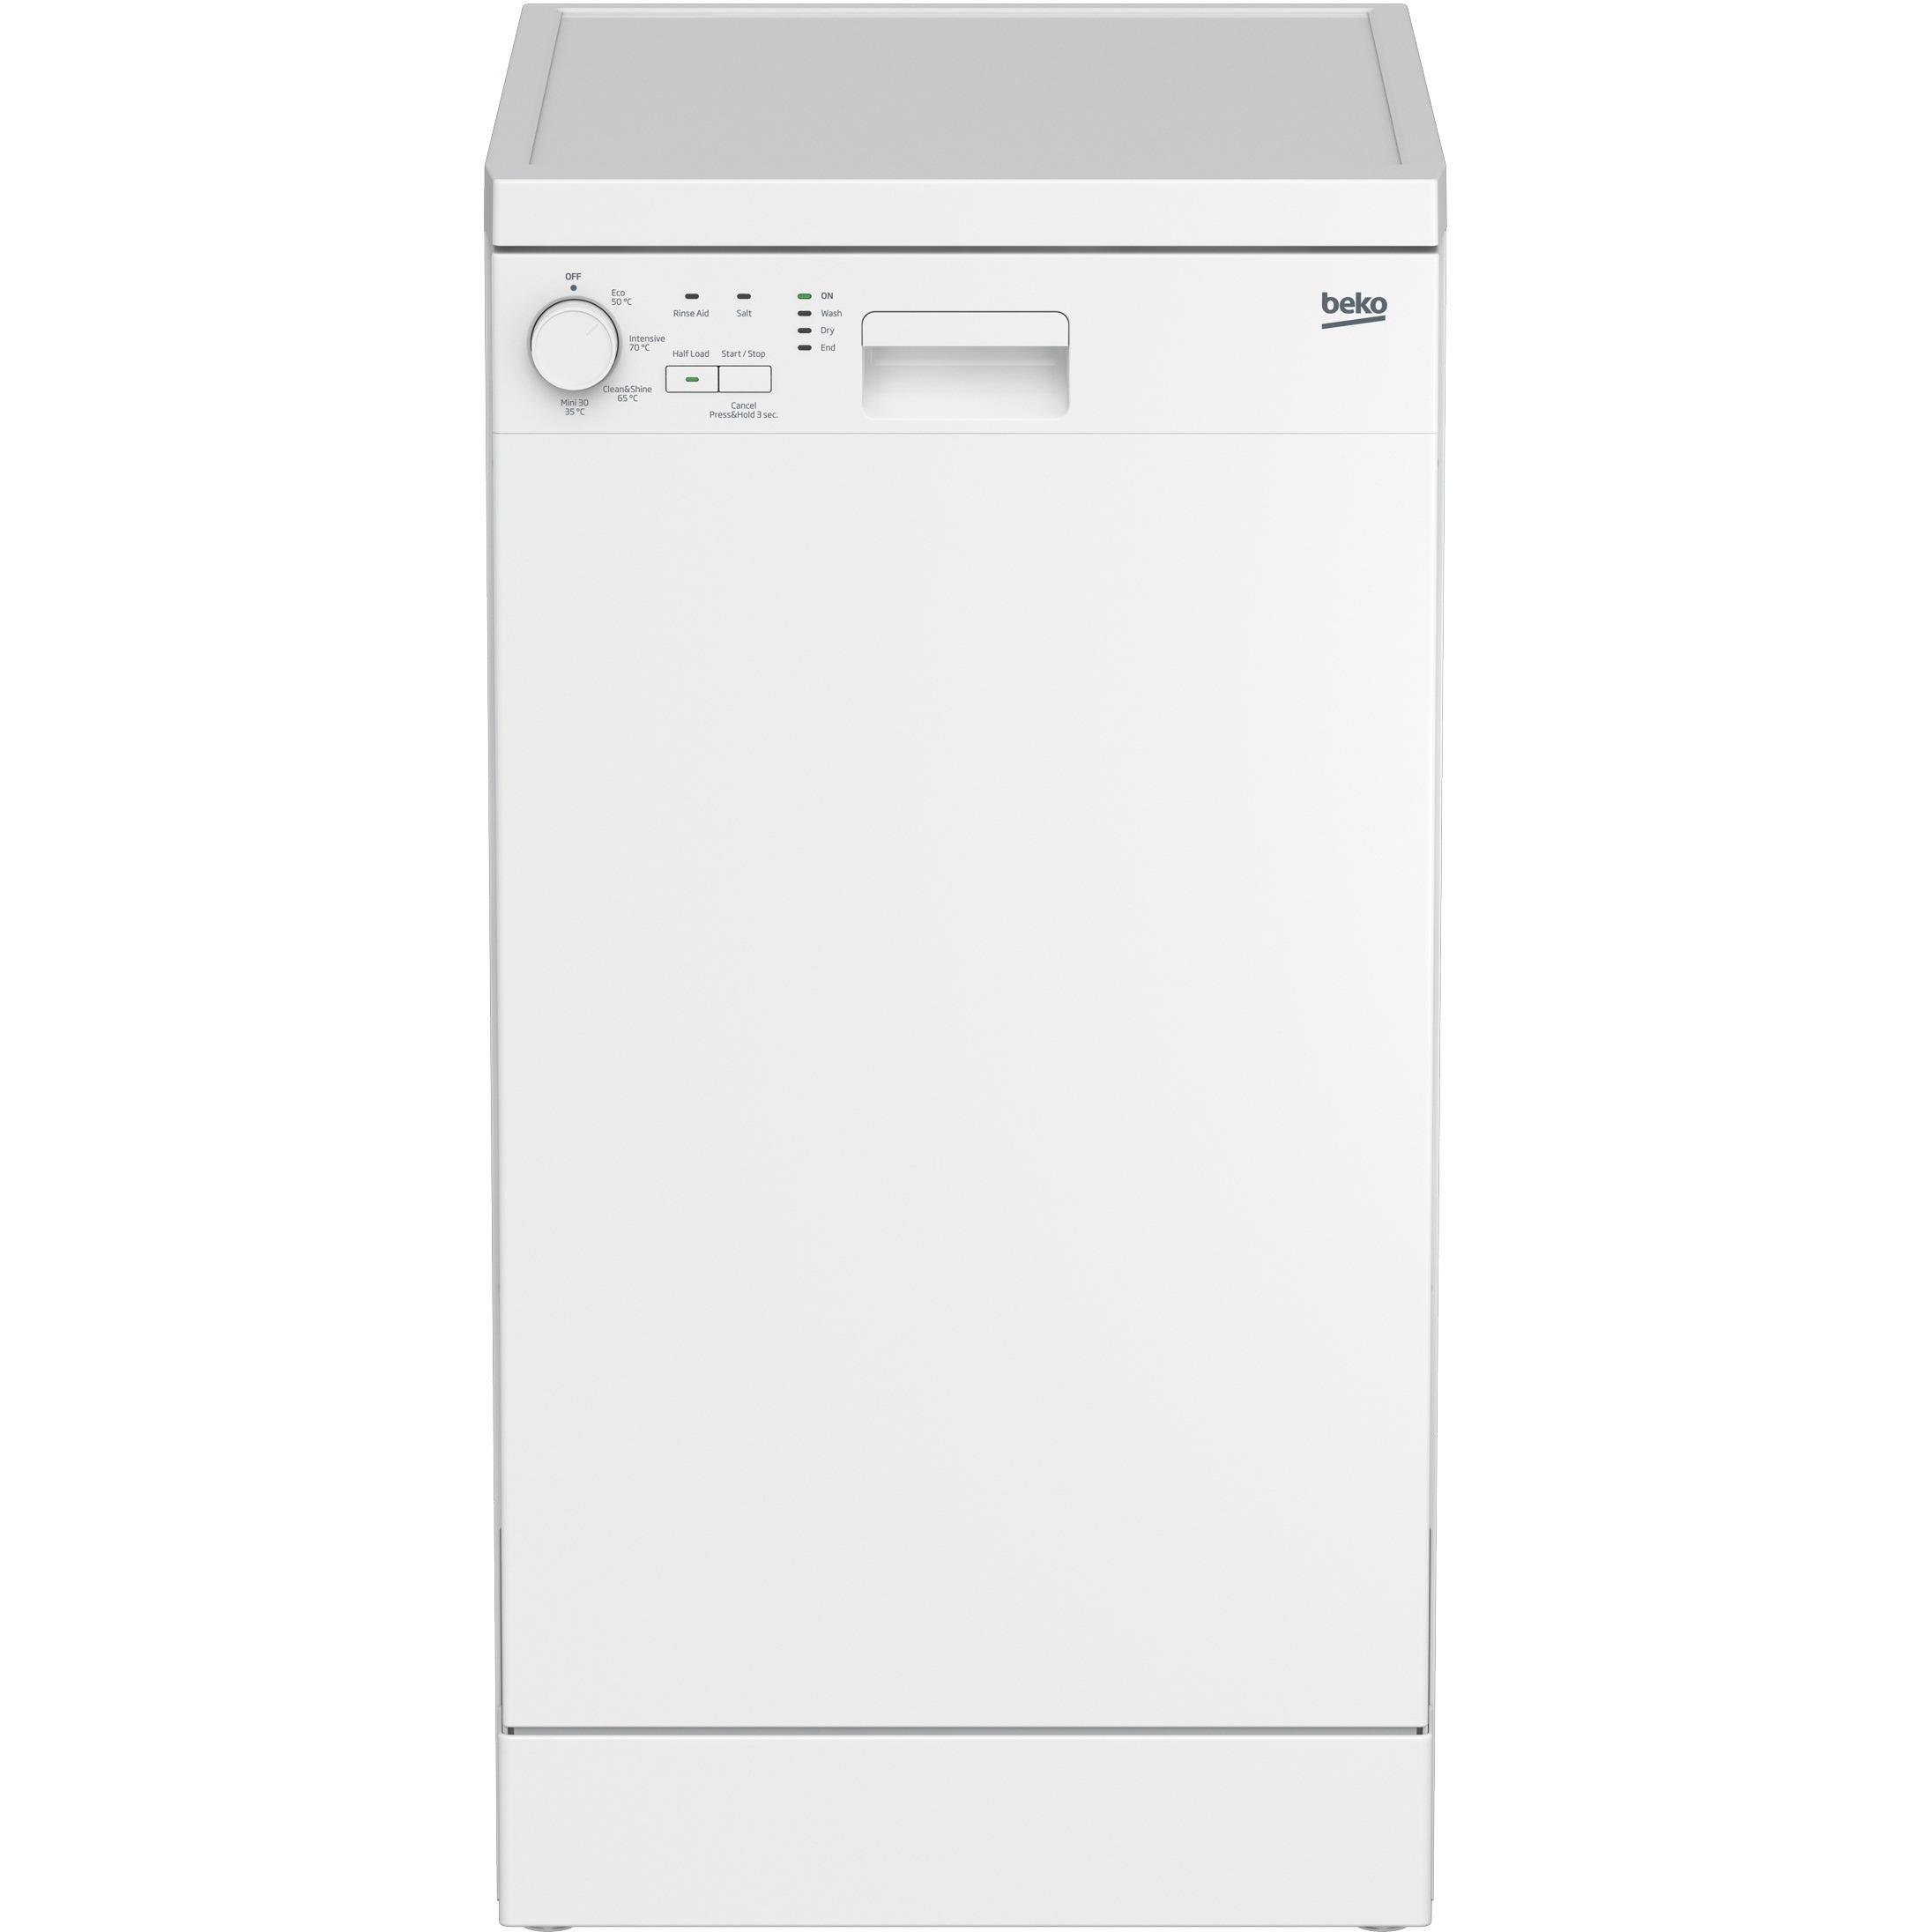 Beko DFS04C10W Slimline Dishwasher